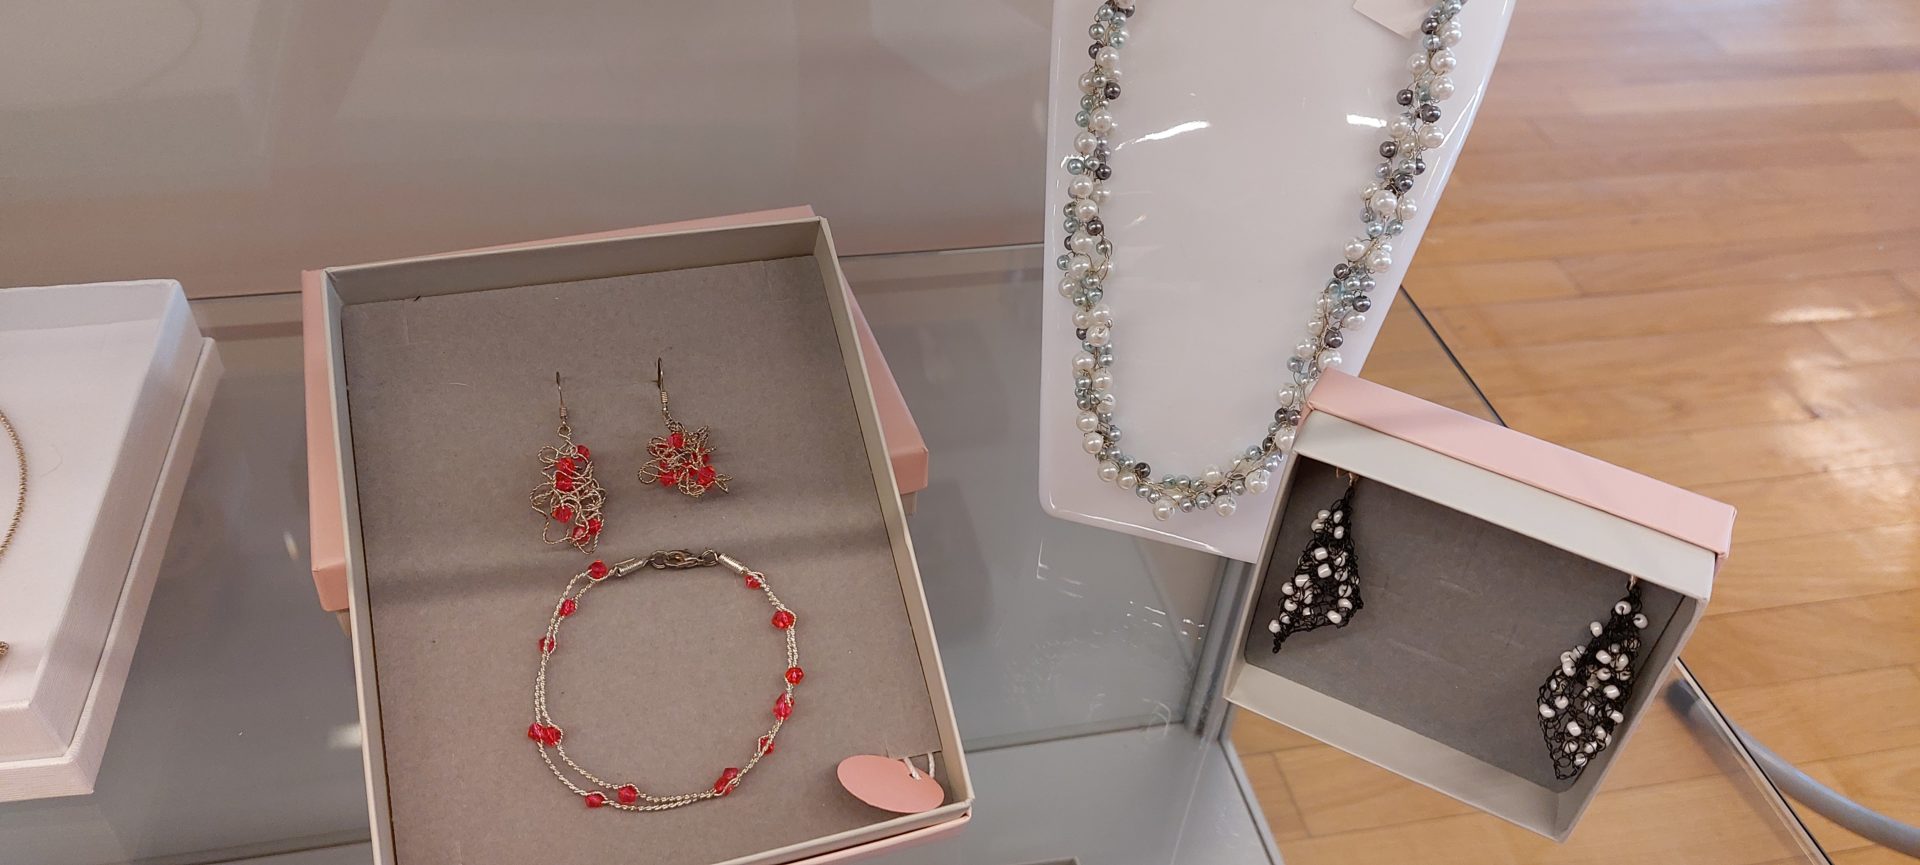 20220423 104352 - Heart's jewellery - razstava kvačkanega nakita iz žice in pletene žice ustvarjalke Tine Sterle